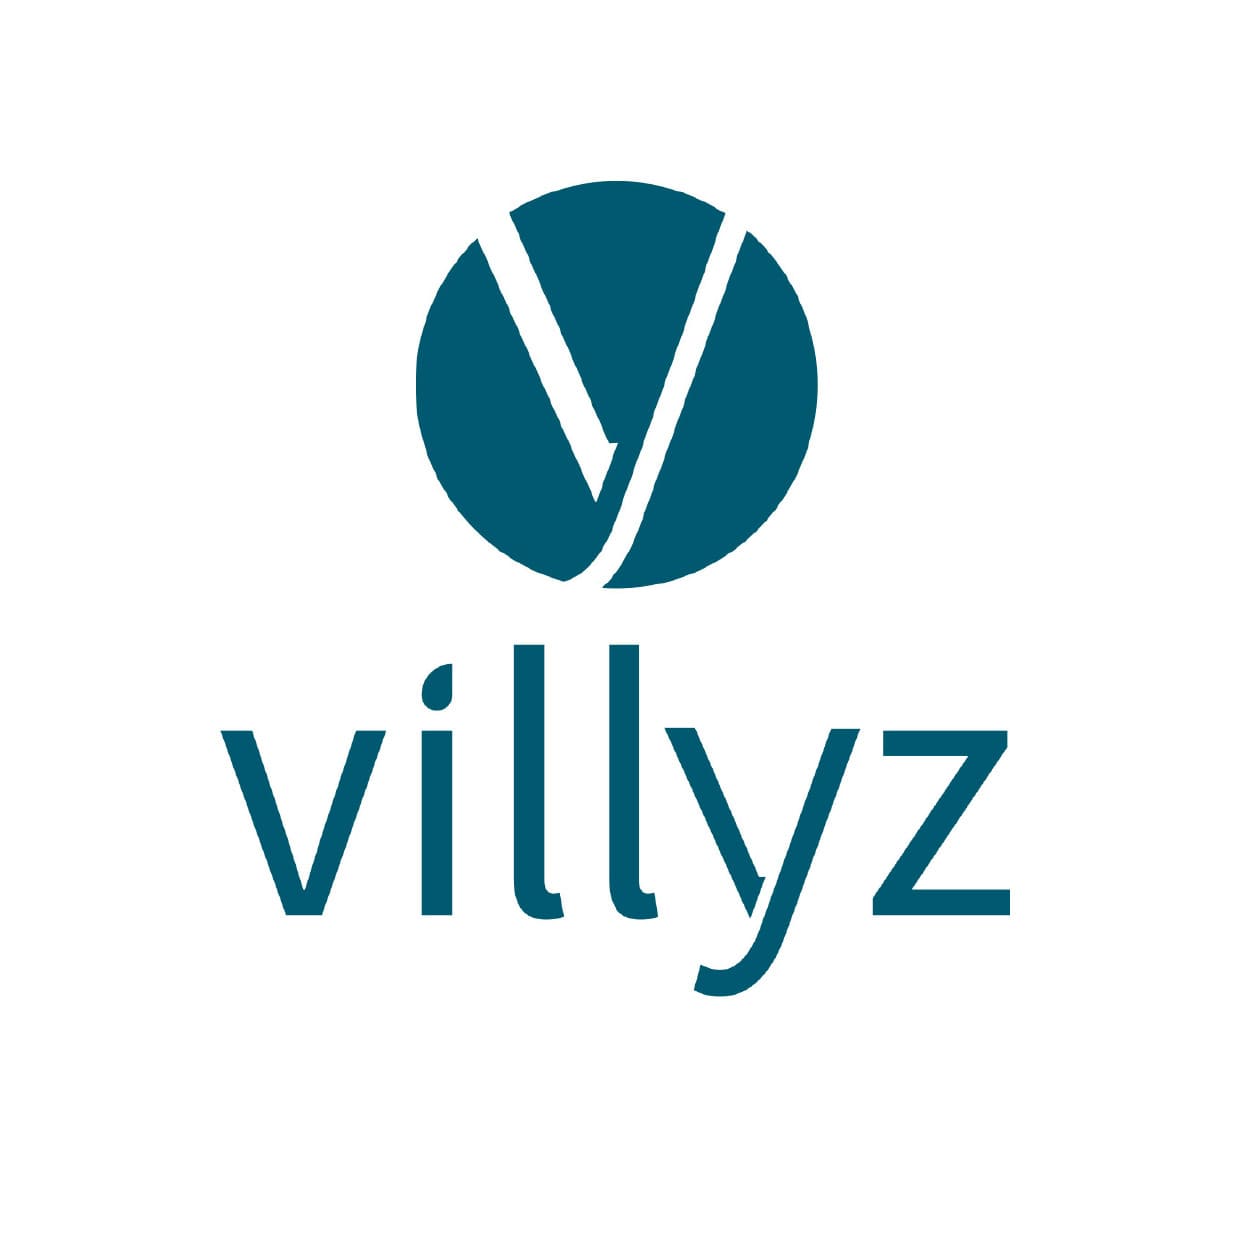 Villyz - First ECSP licensed French crowdfunding platform